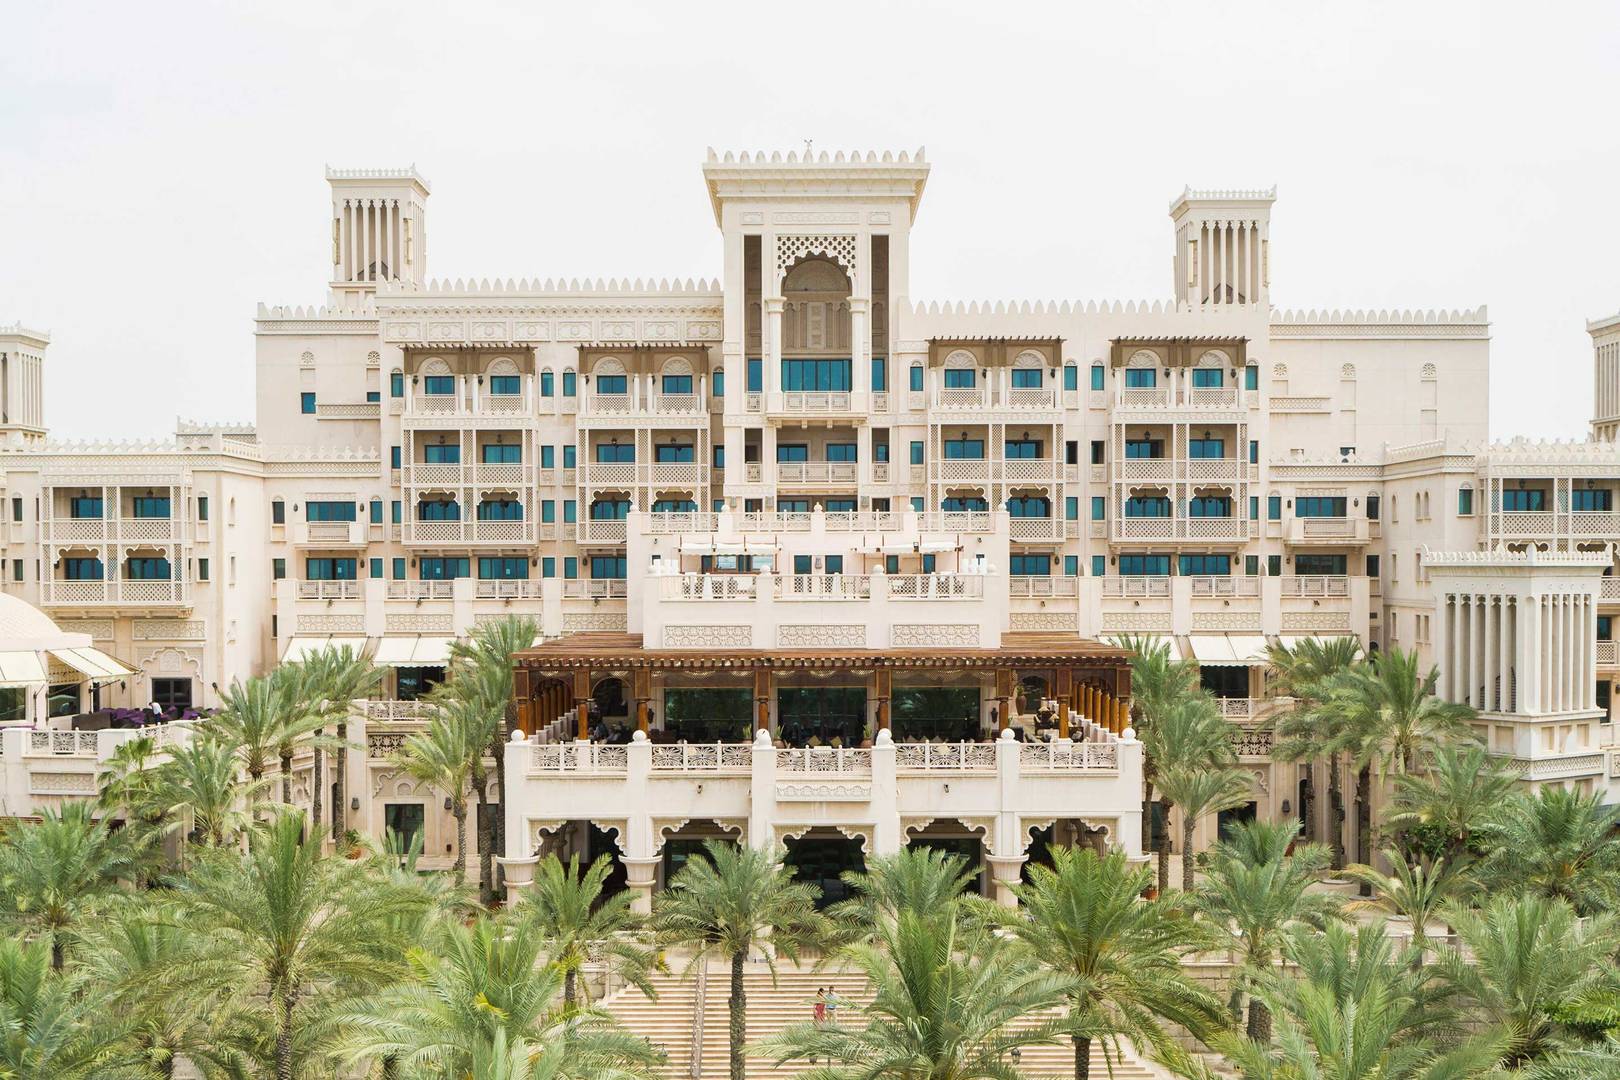 View of the facade of the Jumeirah Al Naseem Hotel